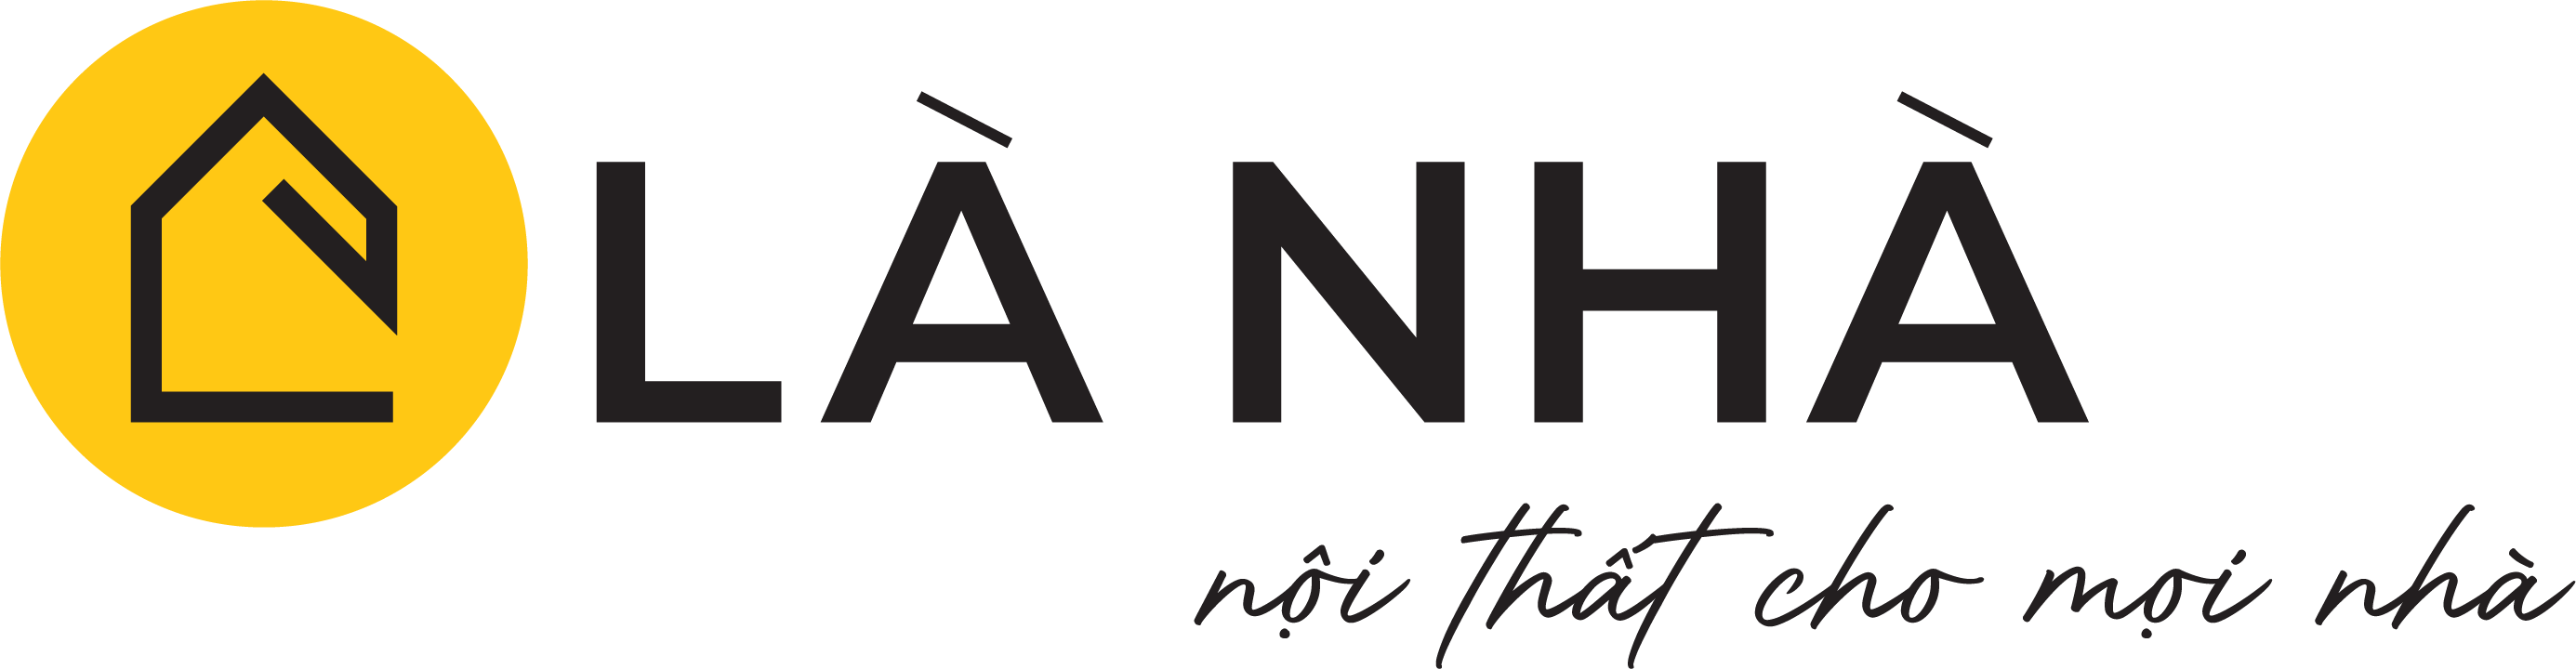 Logo Lanha